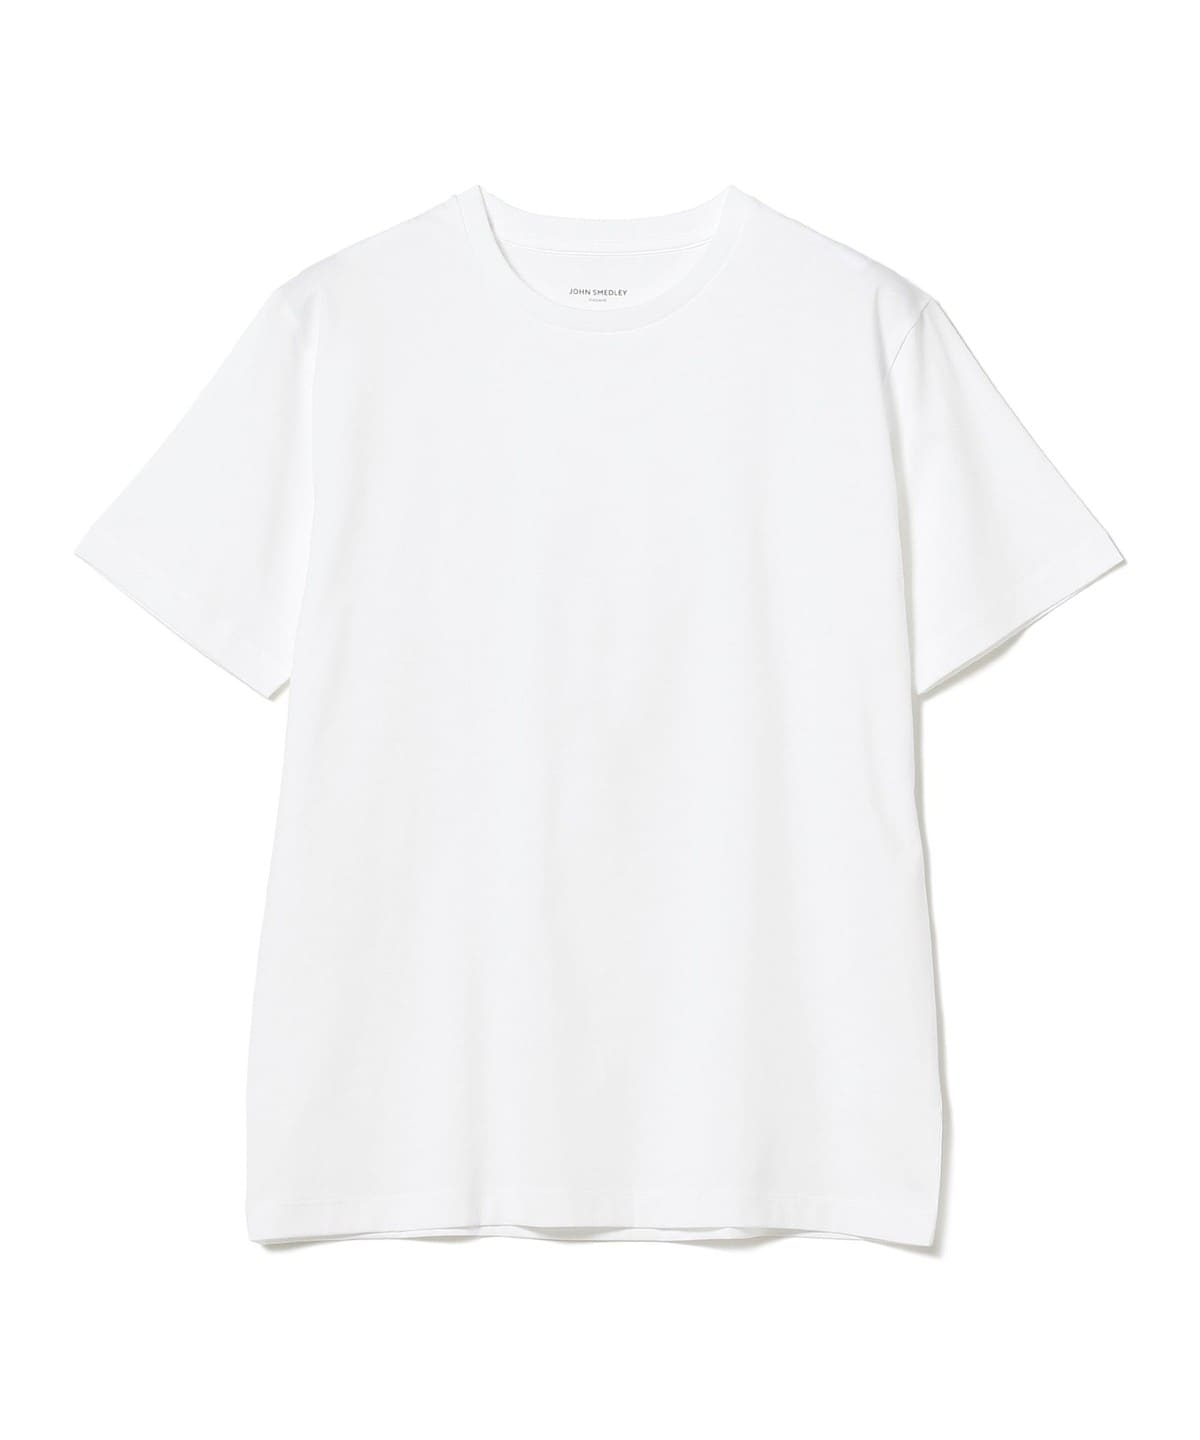 BEAMS F（ビームスF）JOHN SMEDLEY / クルーネック Tシャツ（Tシャツ 